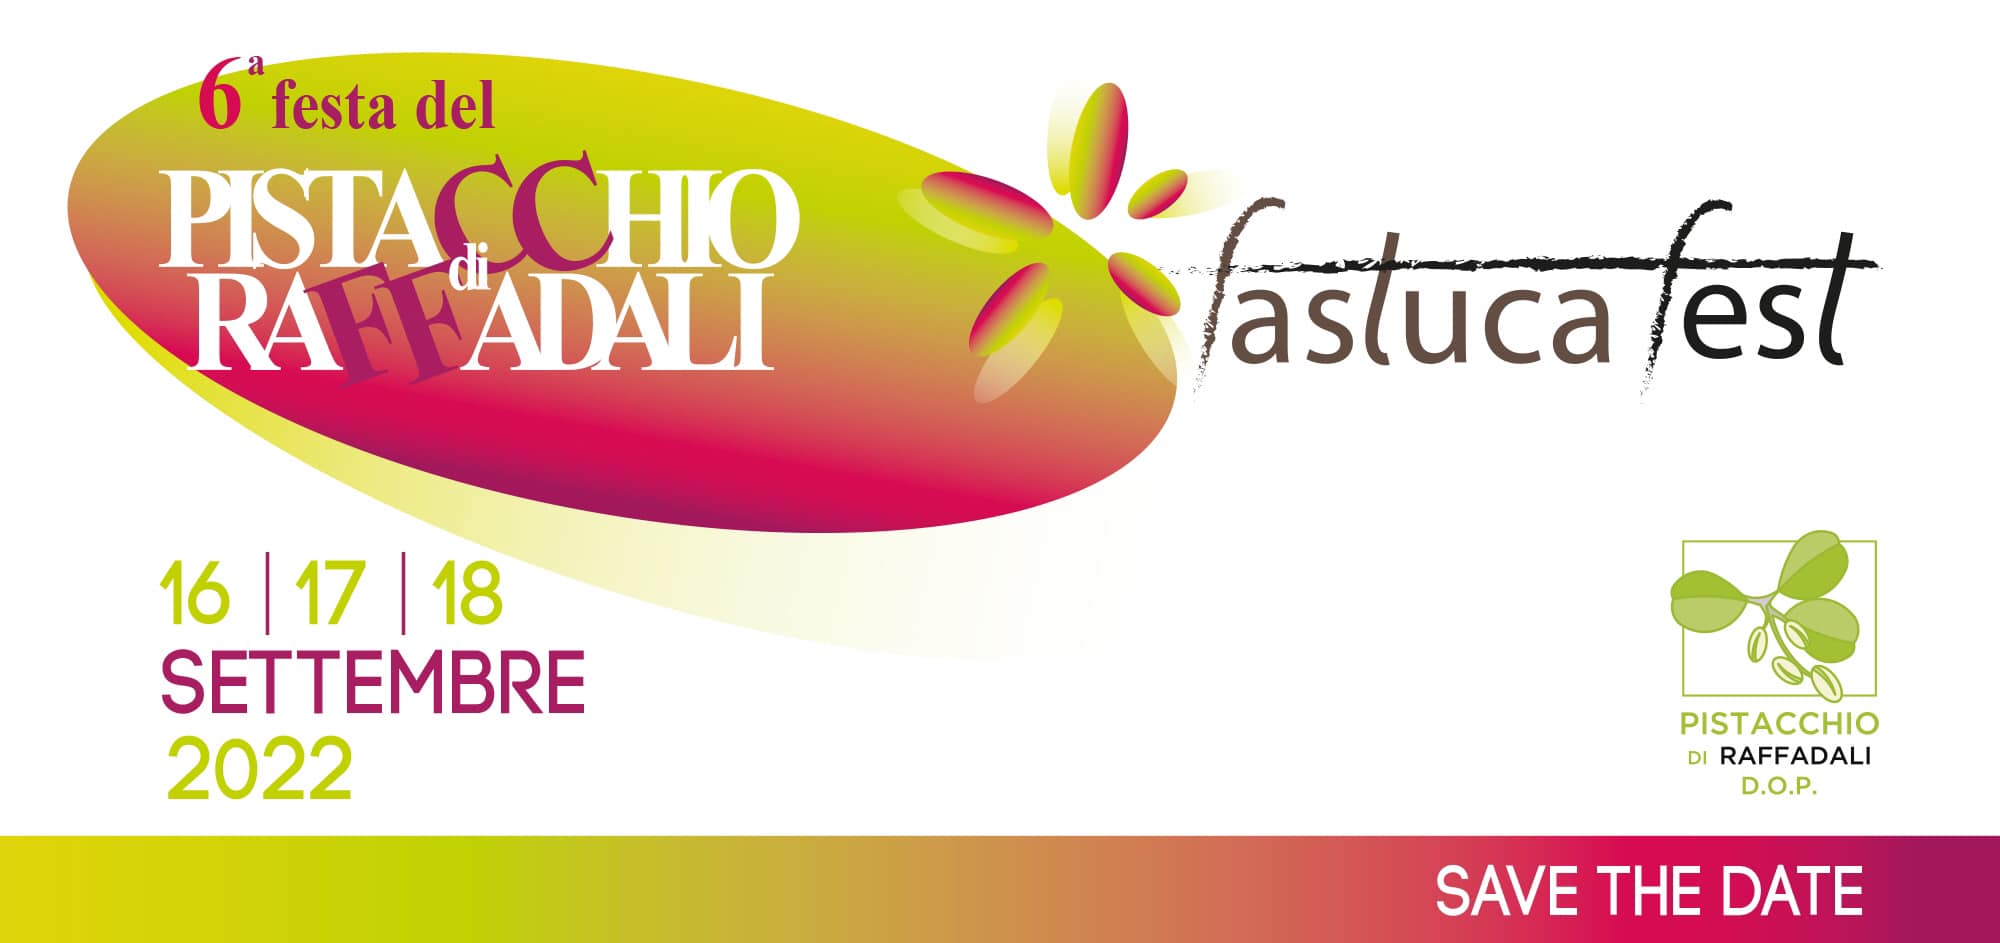 Fastuca Fest 2022 - La sagra del pistacchio di Raffadali